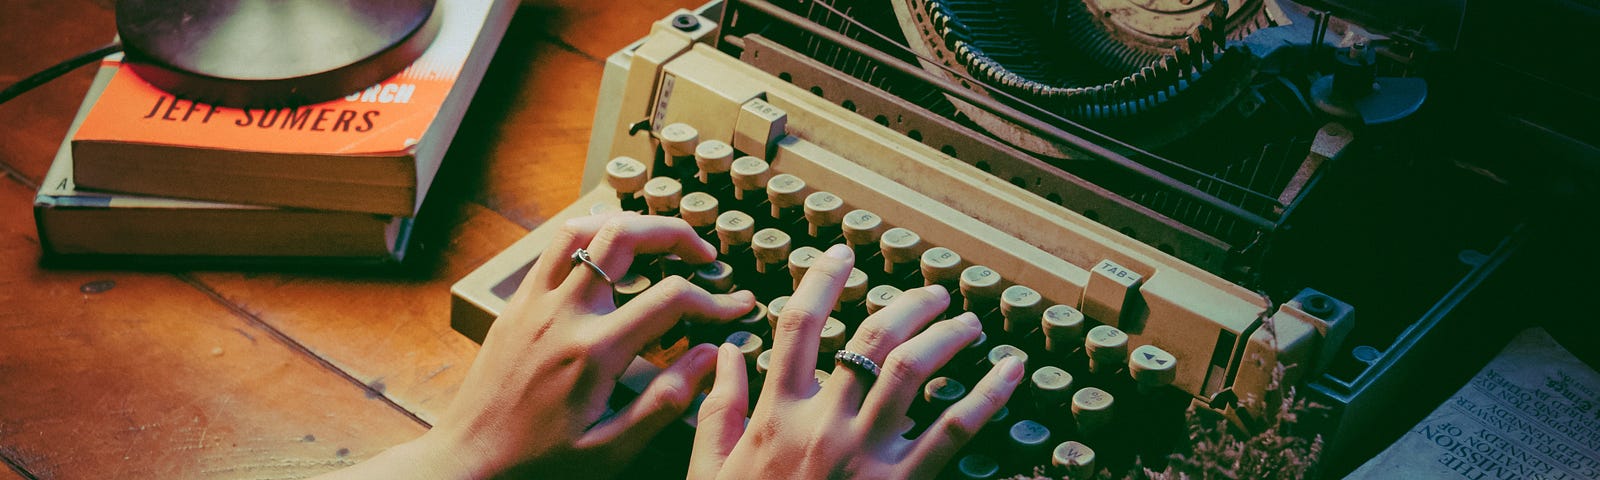 Person using typewriter